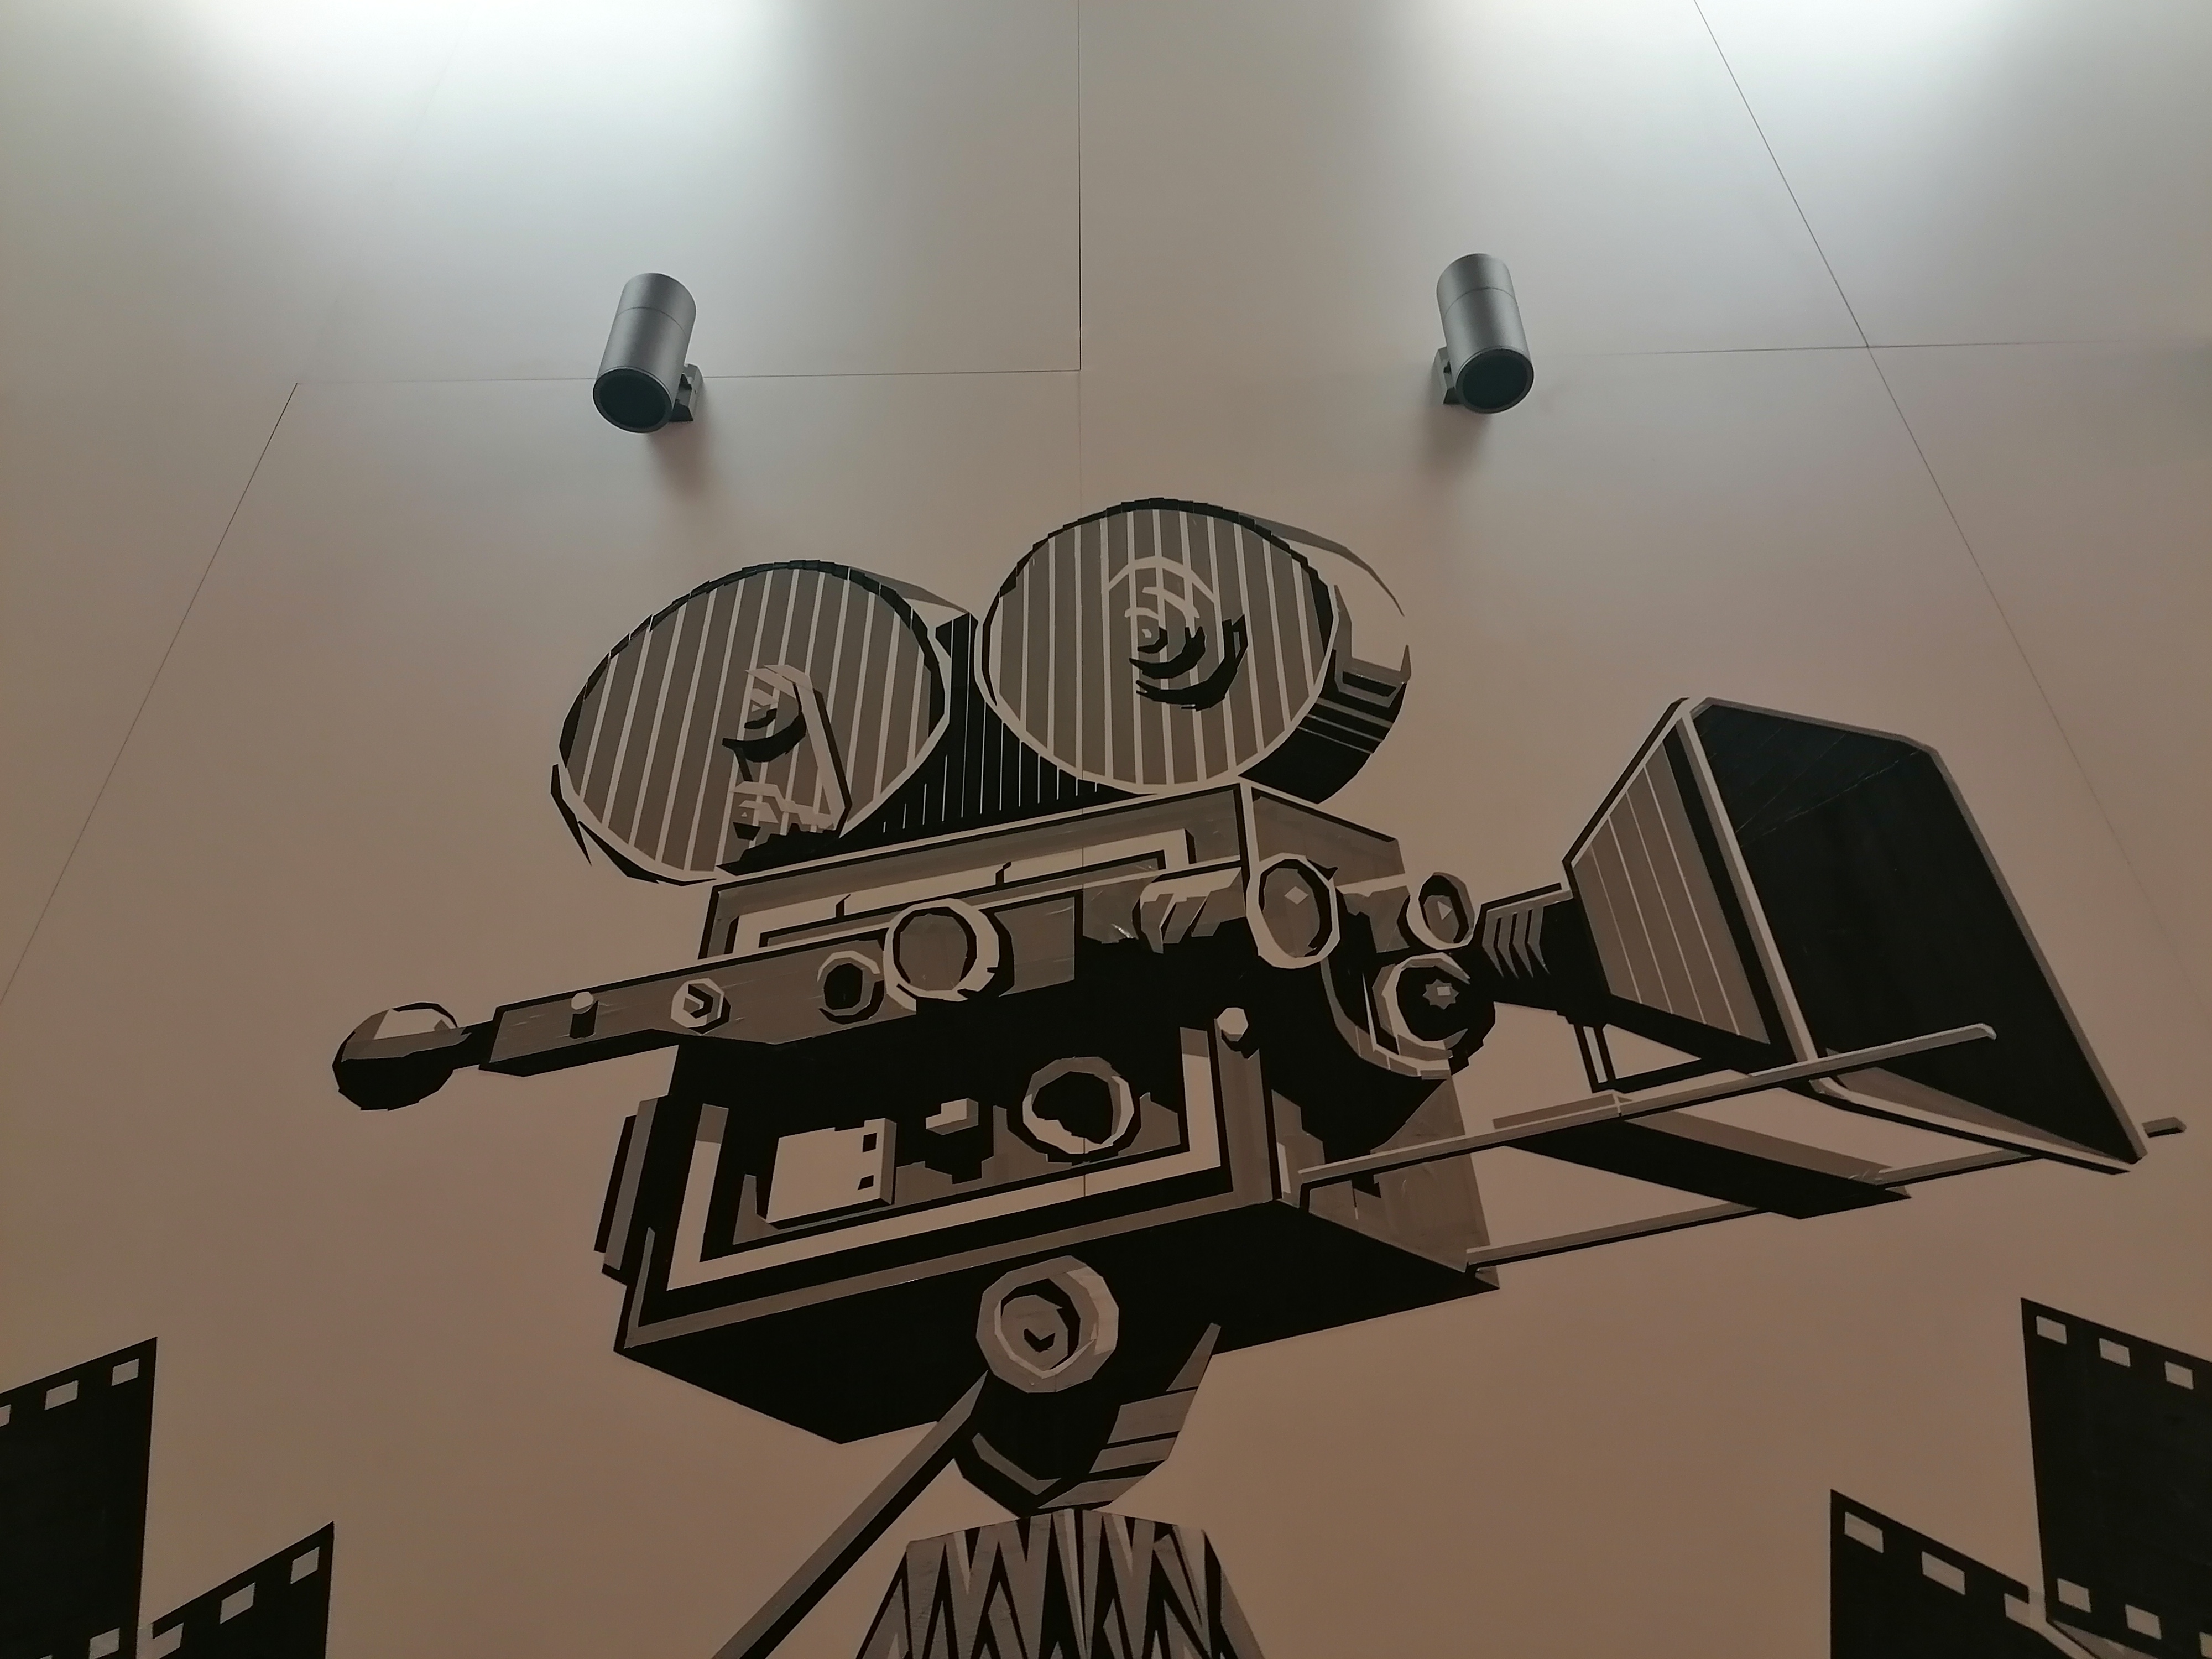 Kamera z taśmą filmową - malowidło na ścianie kina Forum